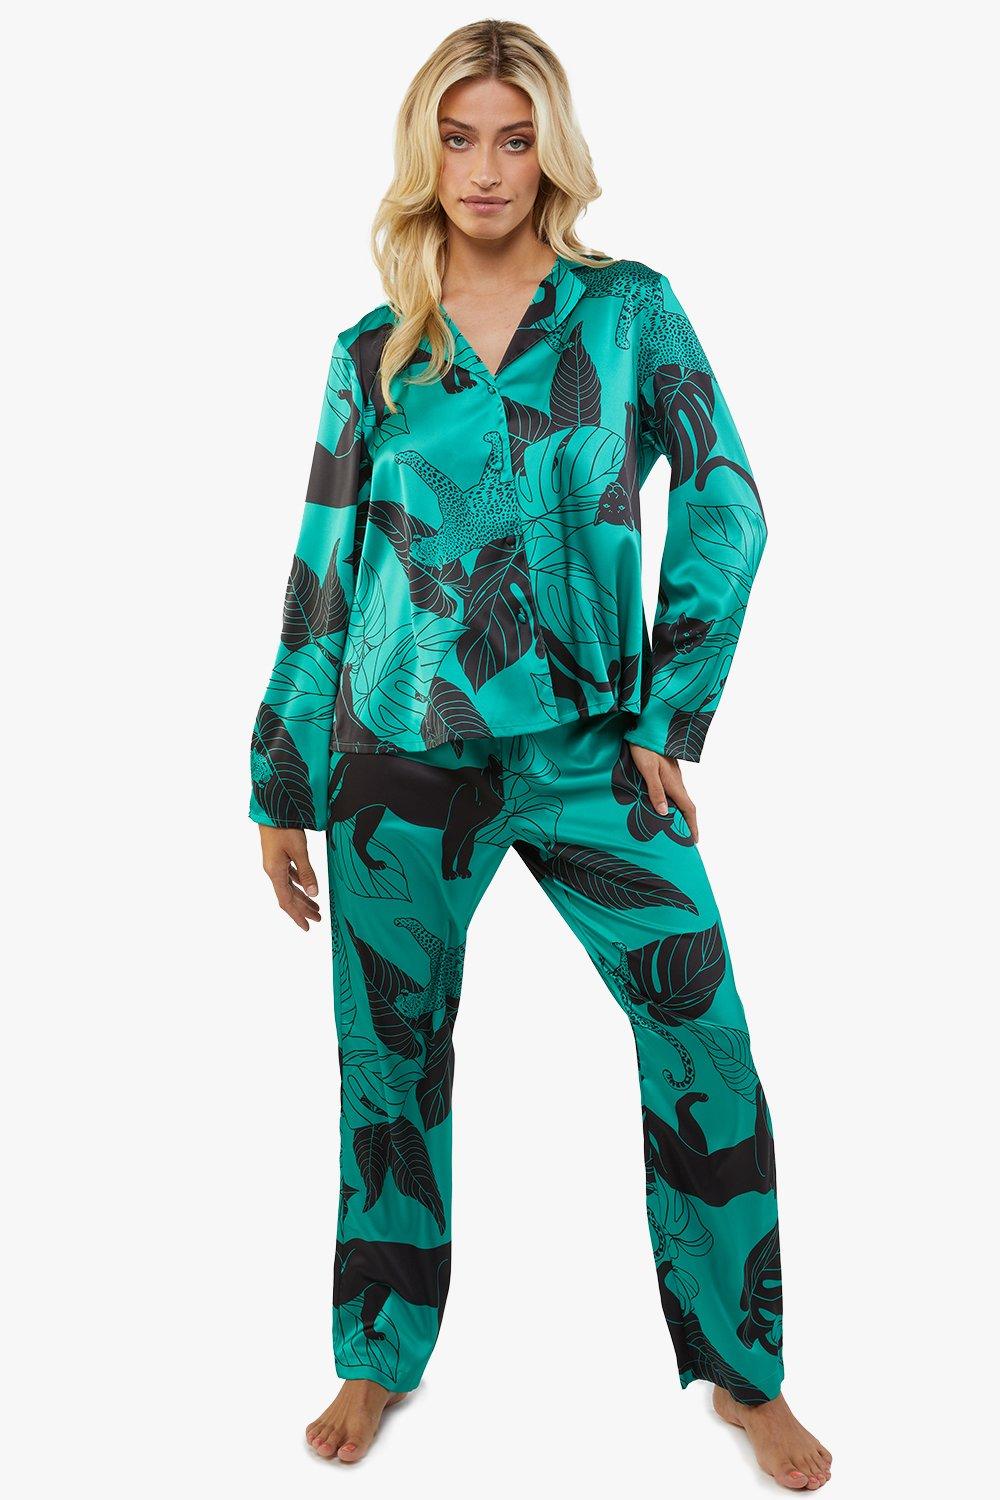 Panther Print Satin Pyjama Set